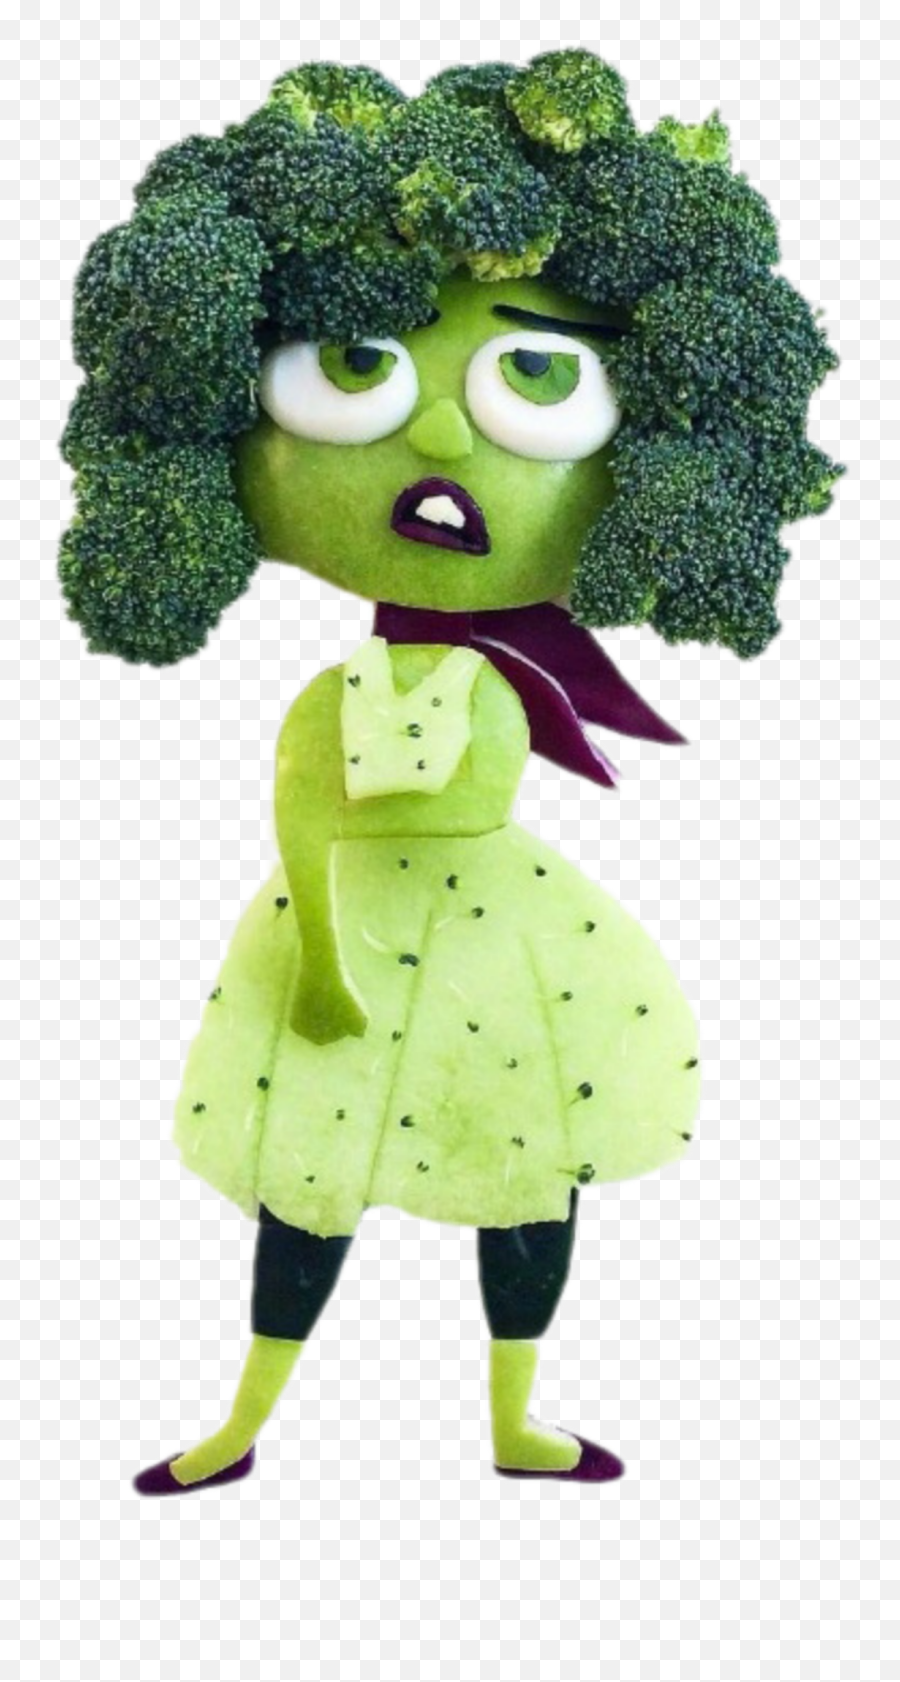 Trending Broccoli Stickers - Miss Broccoli Emoji,Broccoli Emoji